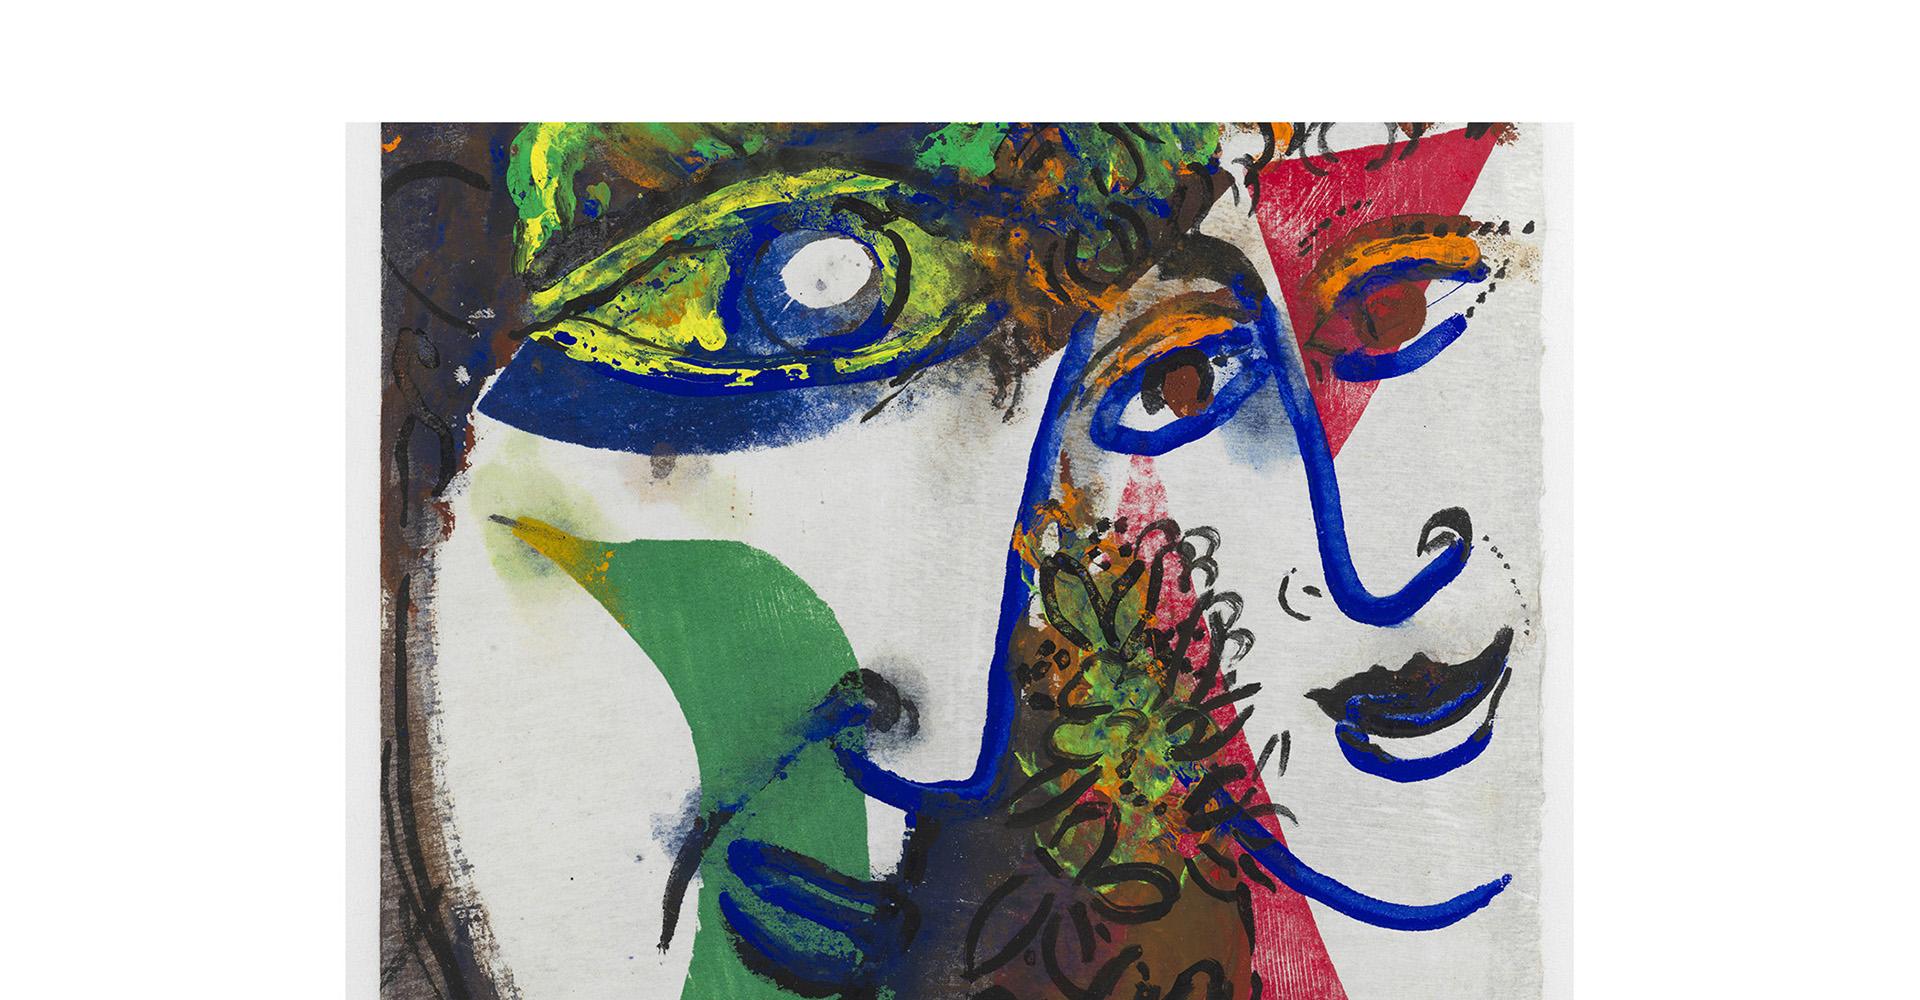 Marc Chagall, Esquisse pour deux visages (détail, 1968, gouache et encre de Chine sur papier Japon nacré, 33 x 25 cm). Musée national d'art moderne, Paris, donation Meret Meyer (2022) © Archives Marc et ida Chagall / ADAGP, Paris, 2023. Mosaïque des techniques utilisées par Marc Chagall. Vue des archives Marc et Ida Chagall © Archives Marc et Ida Chagall, Paris, 2023.   